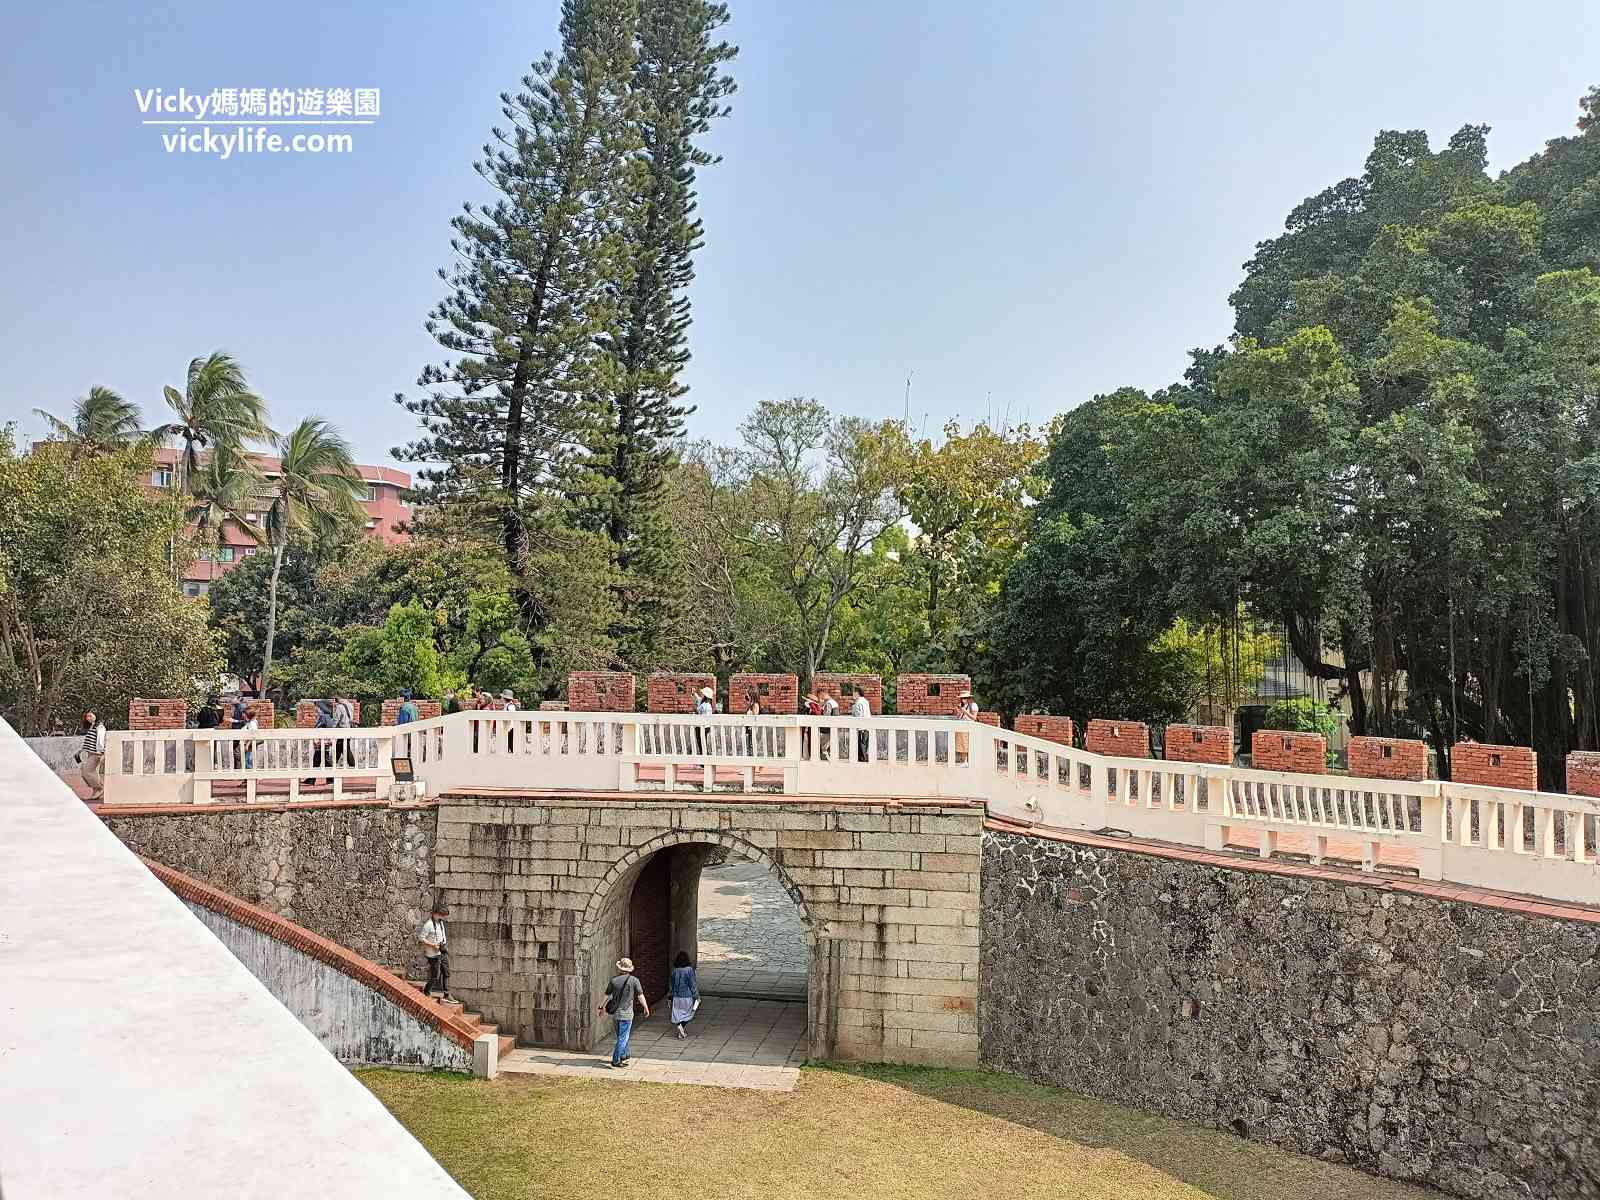 台南古蹟︱大南門 寧南門：走進城門，彷彿來到清朝時期，綠意盎然搭配紅磚城牆，這裡根本是城市裡的秘境